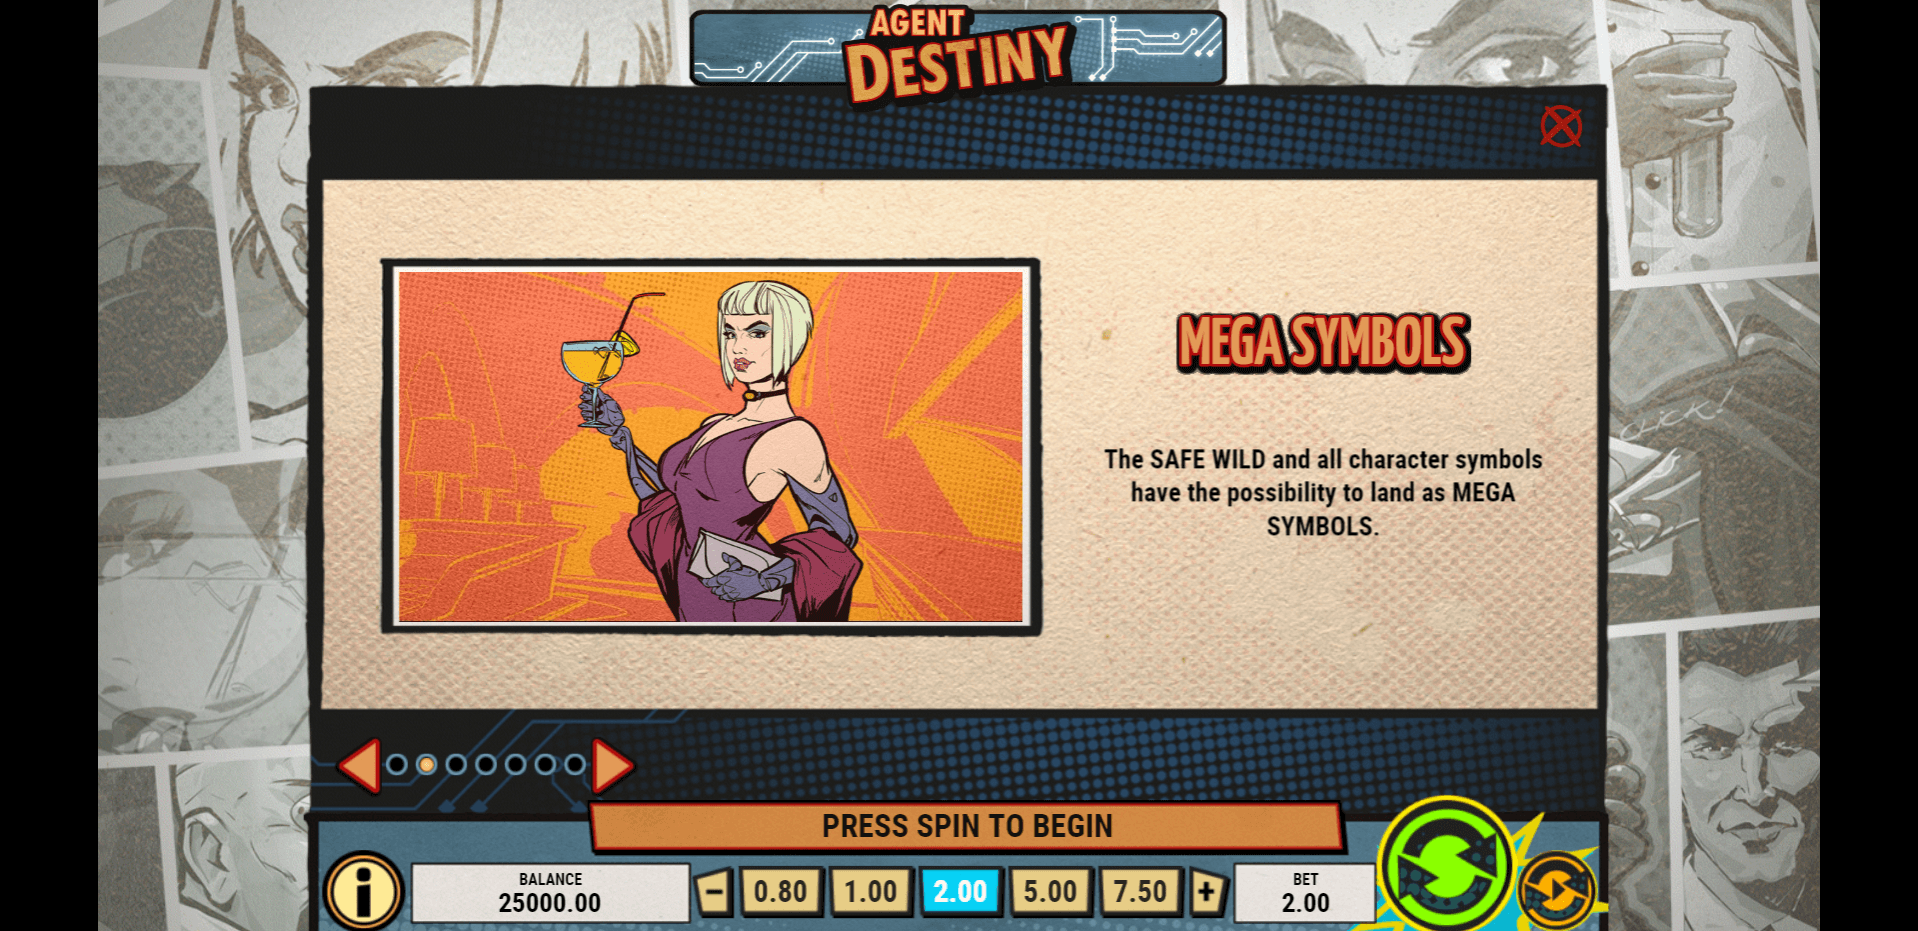 agent destiny slot machine detail image 1